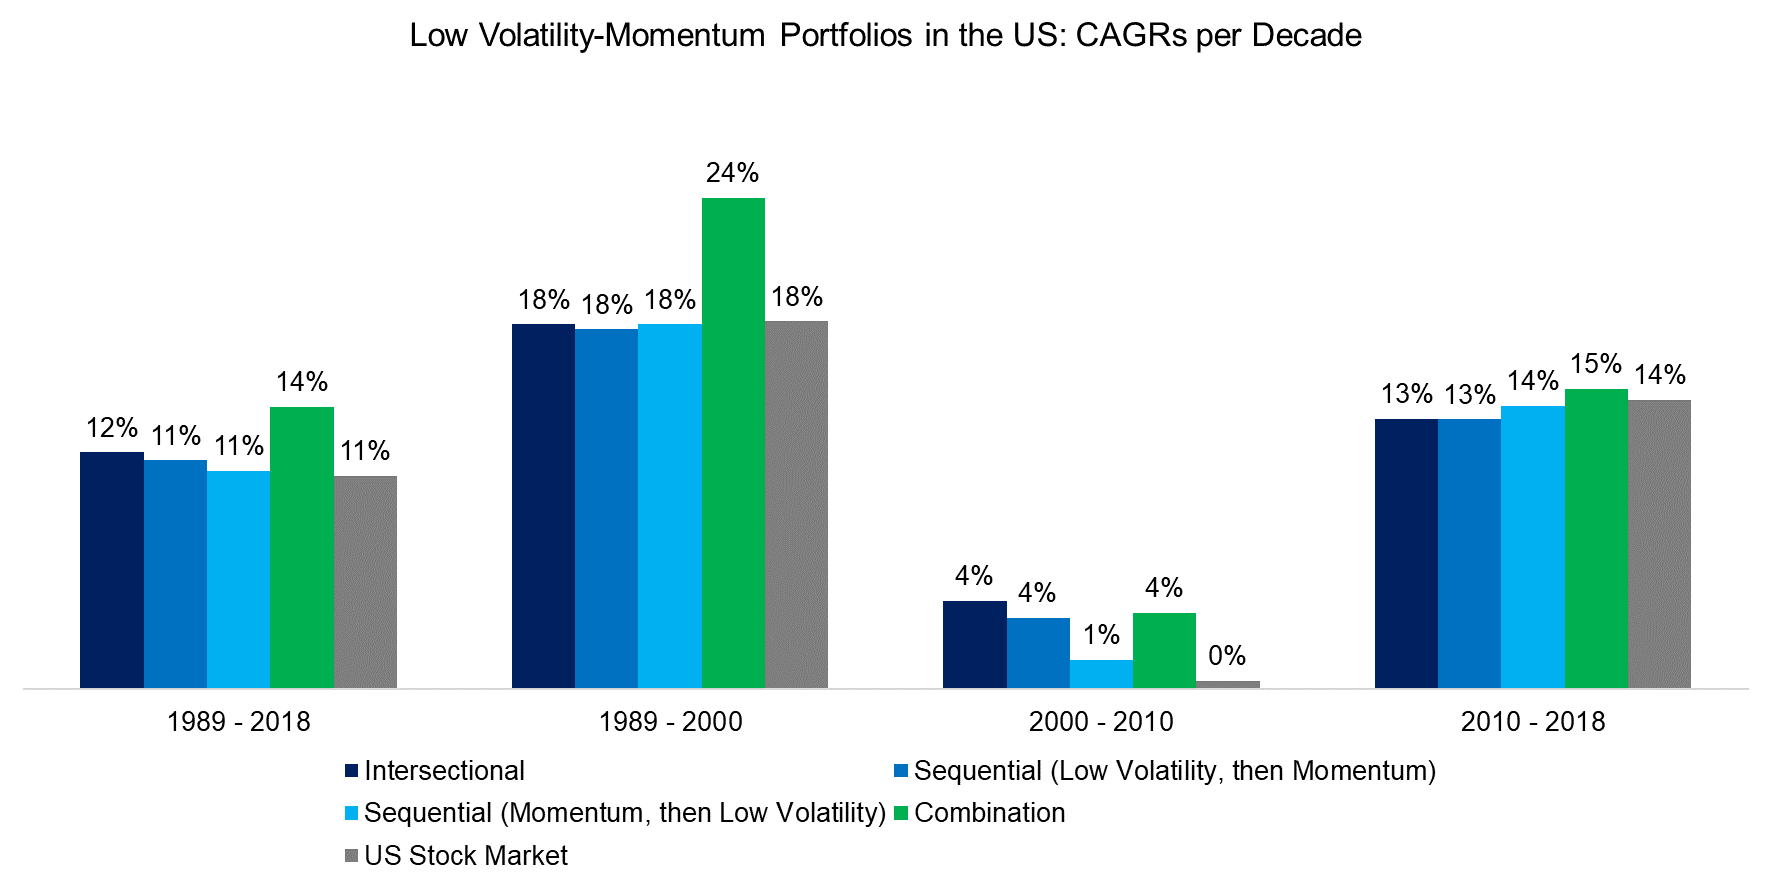 Low Volatility-Momentum Portfolios in the US CAGRs per Decade